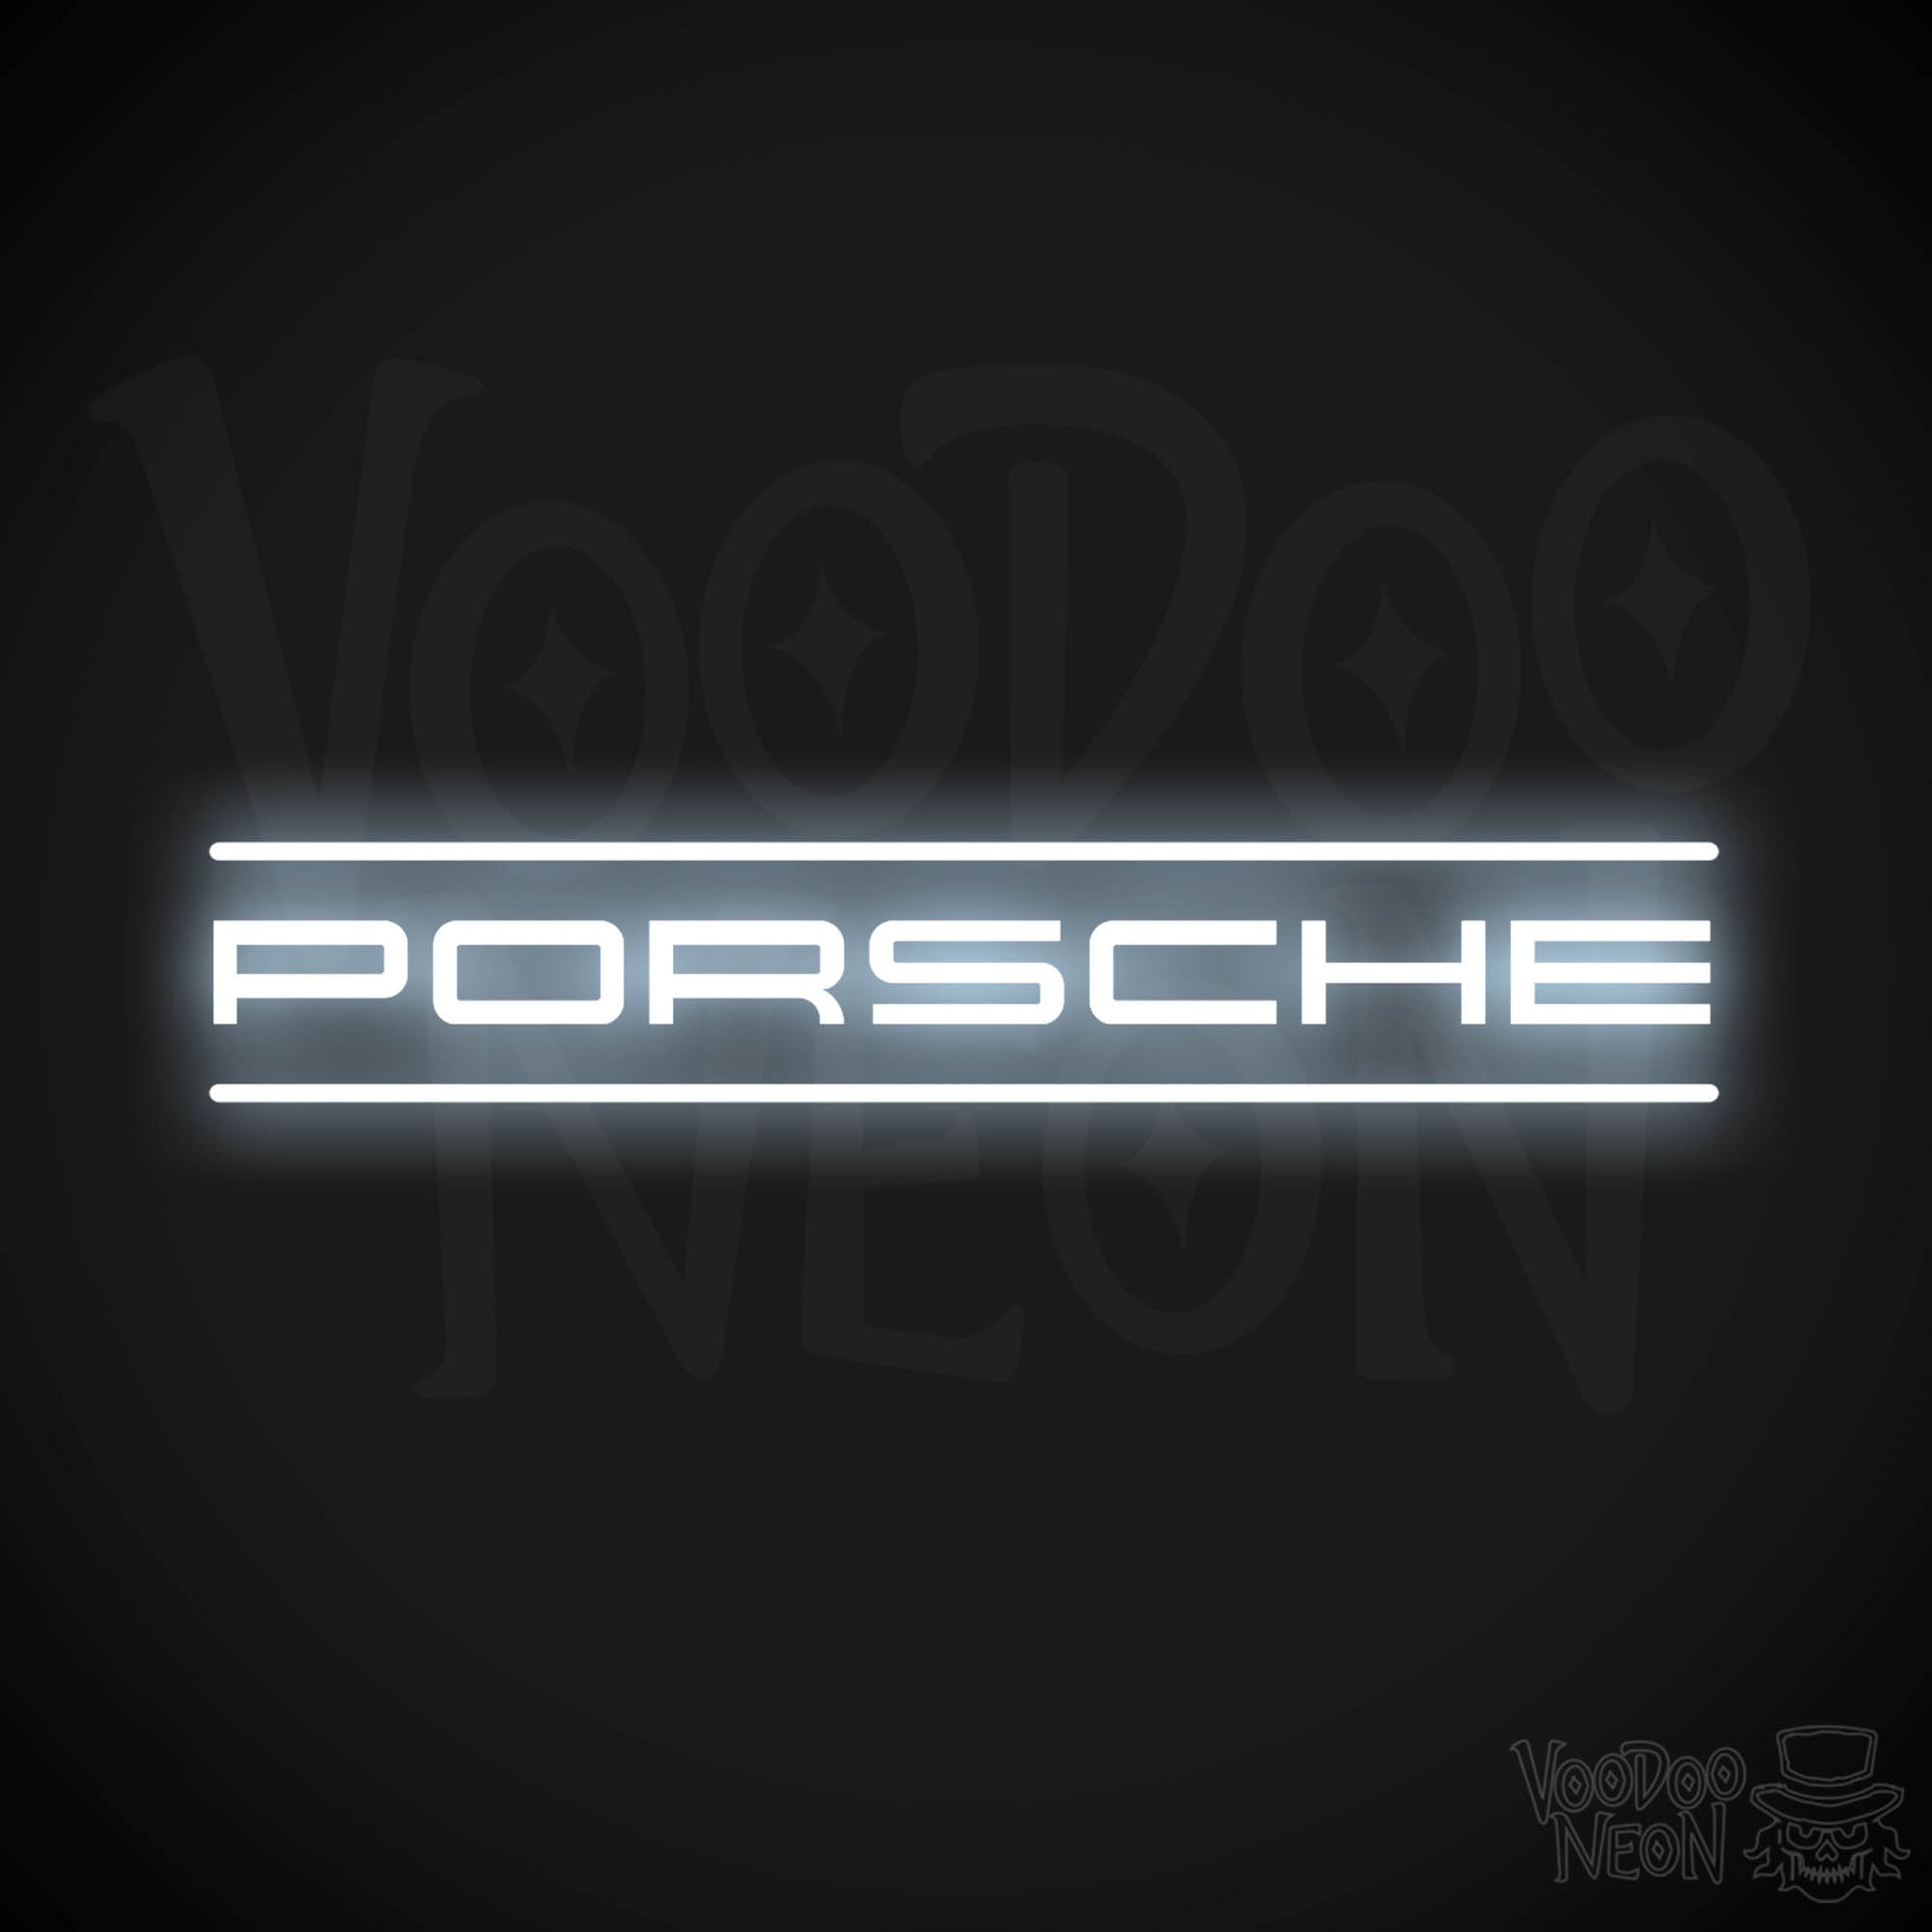 Porsche Neon Sign - Porsche Sign - Porsche Decor - Wall Art - Color Cool White